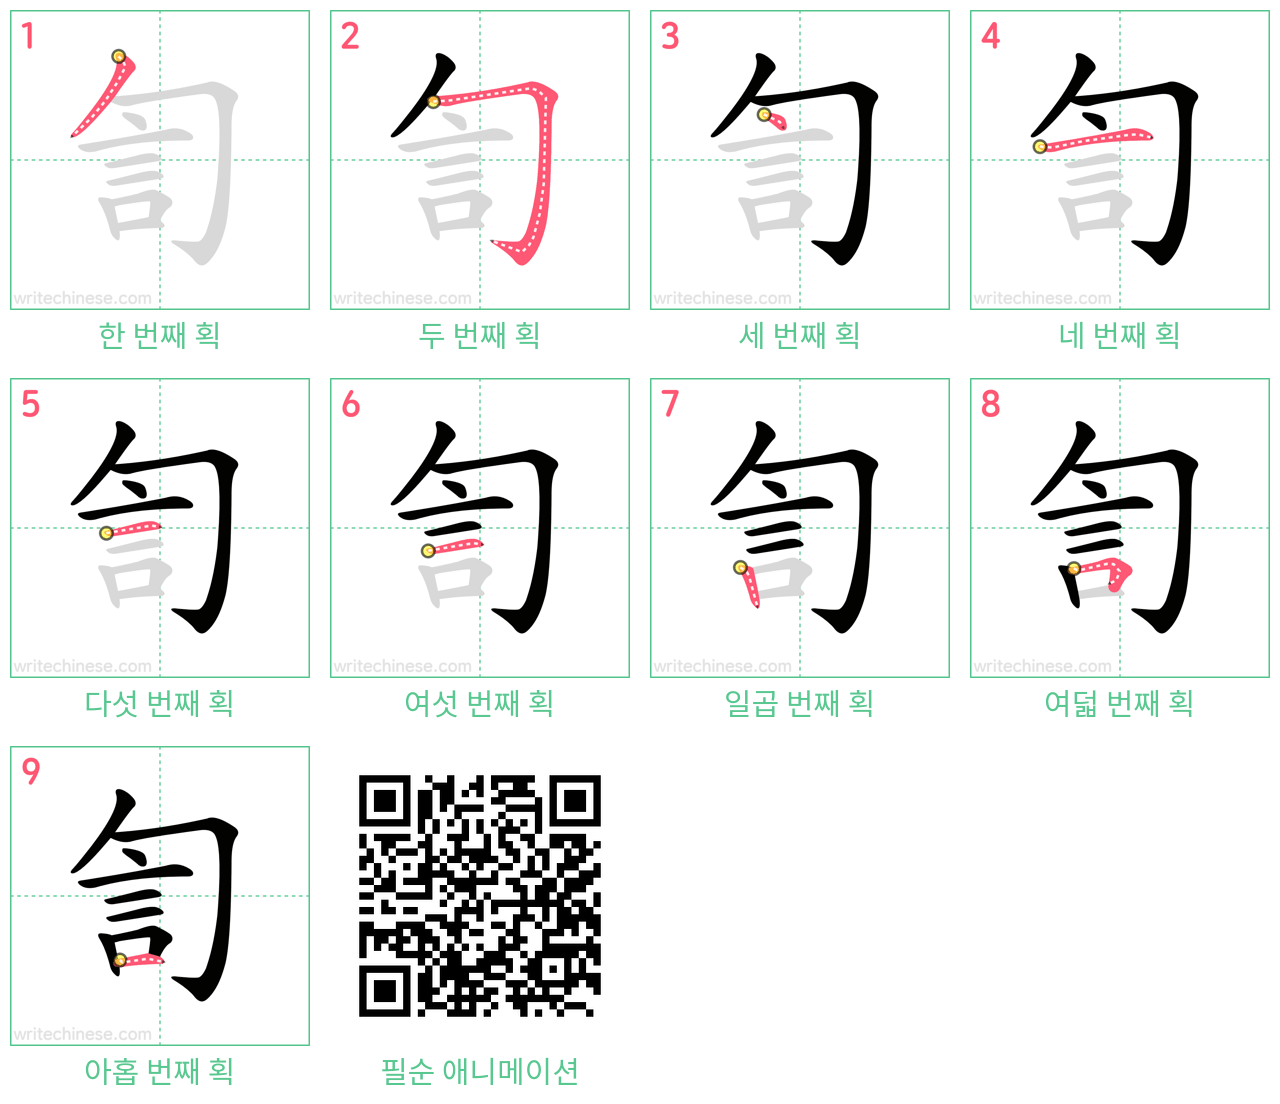 訇 step-by-step stroke order diagrams